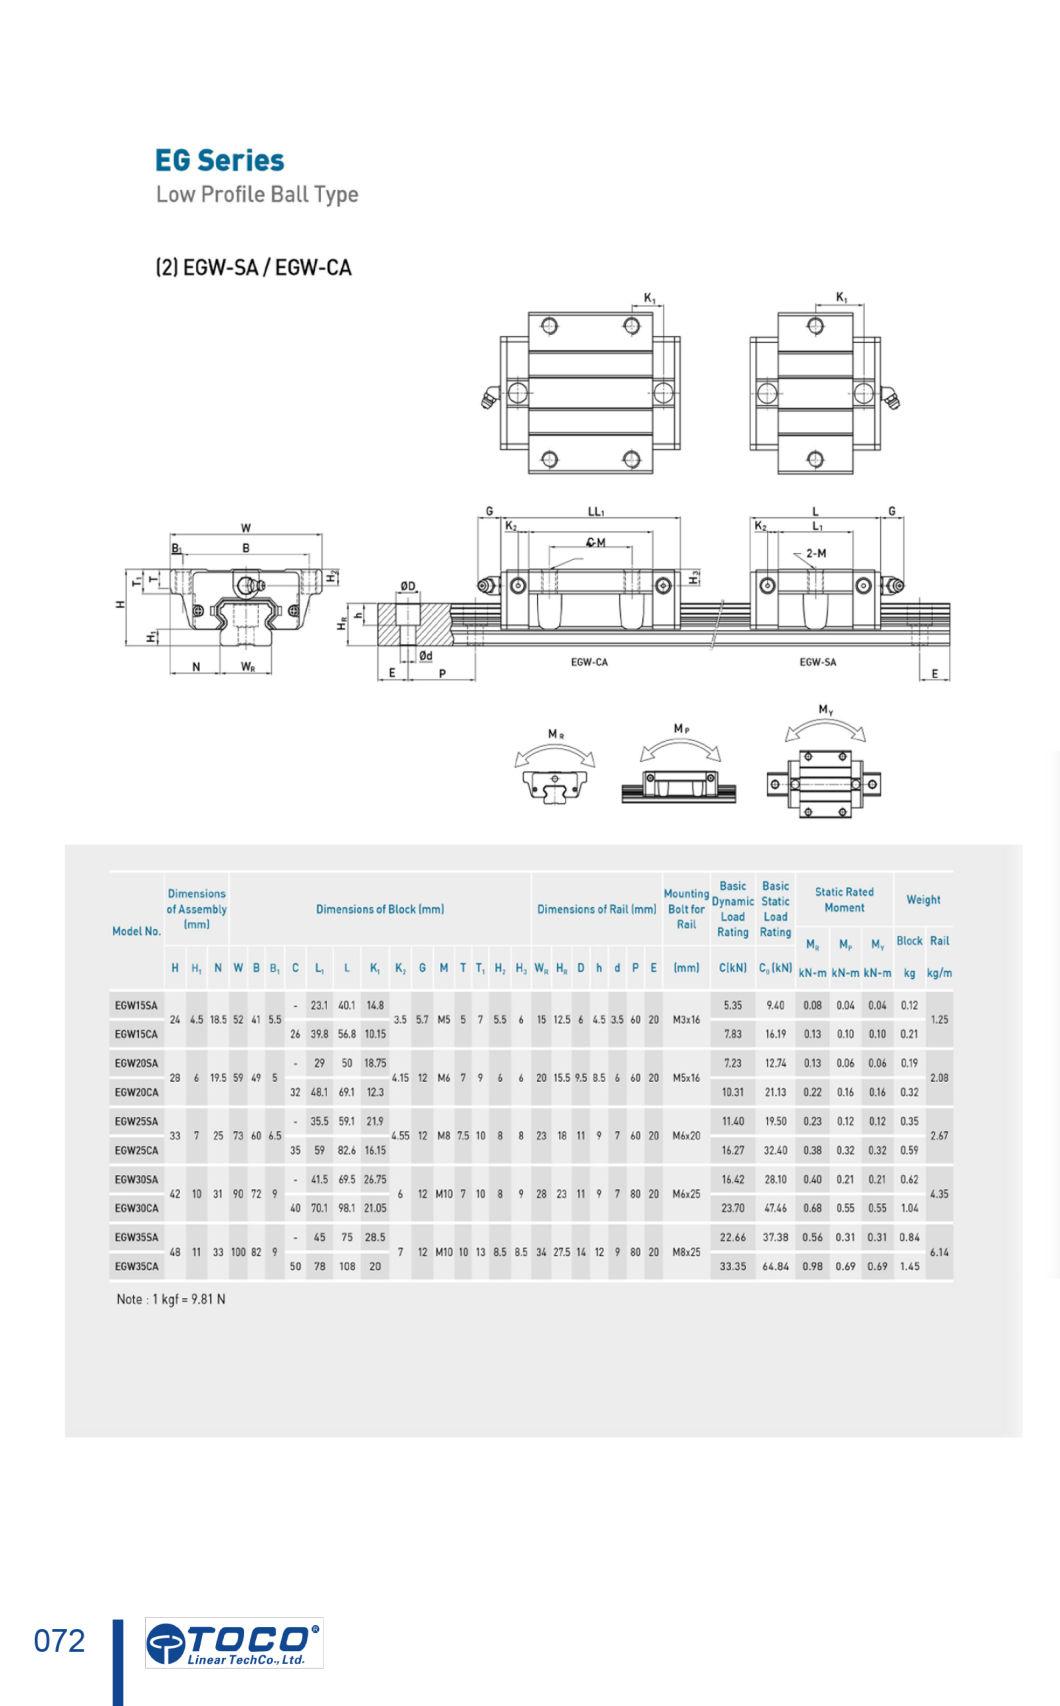 High Precision Egh20ca Linear Guide Rail for Packing Machine